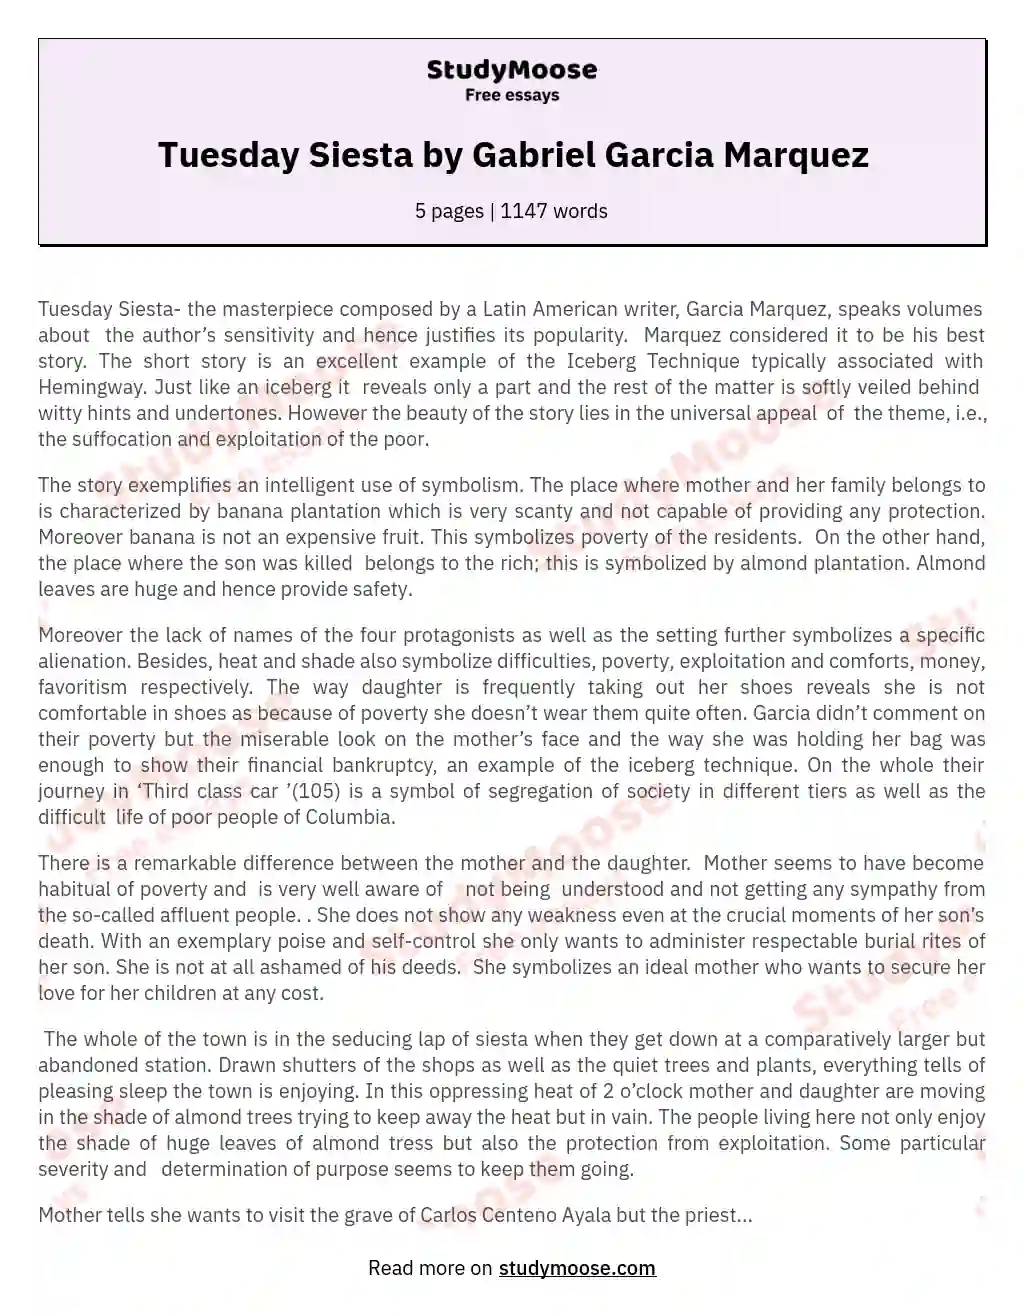 Tuesday Siesta by Gabriel Garcia Marquez essay